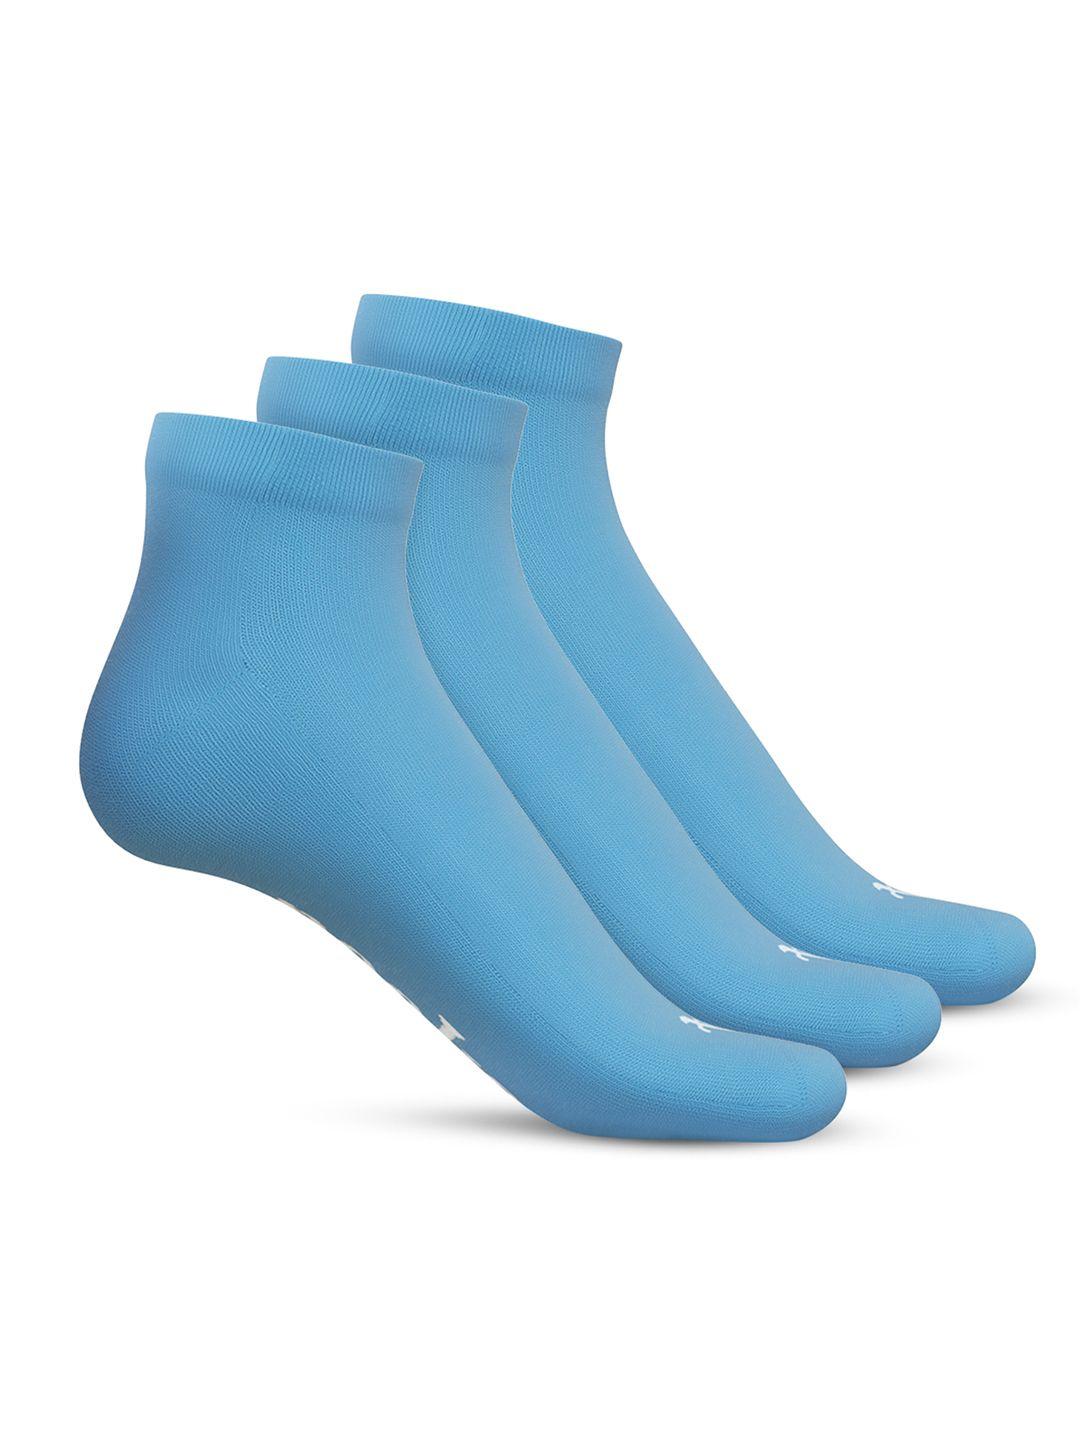 talkingsox unisex pack of 3 ankle length socks